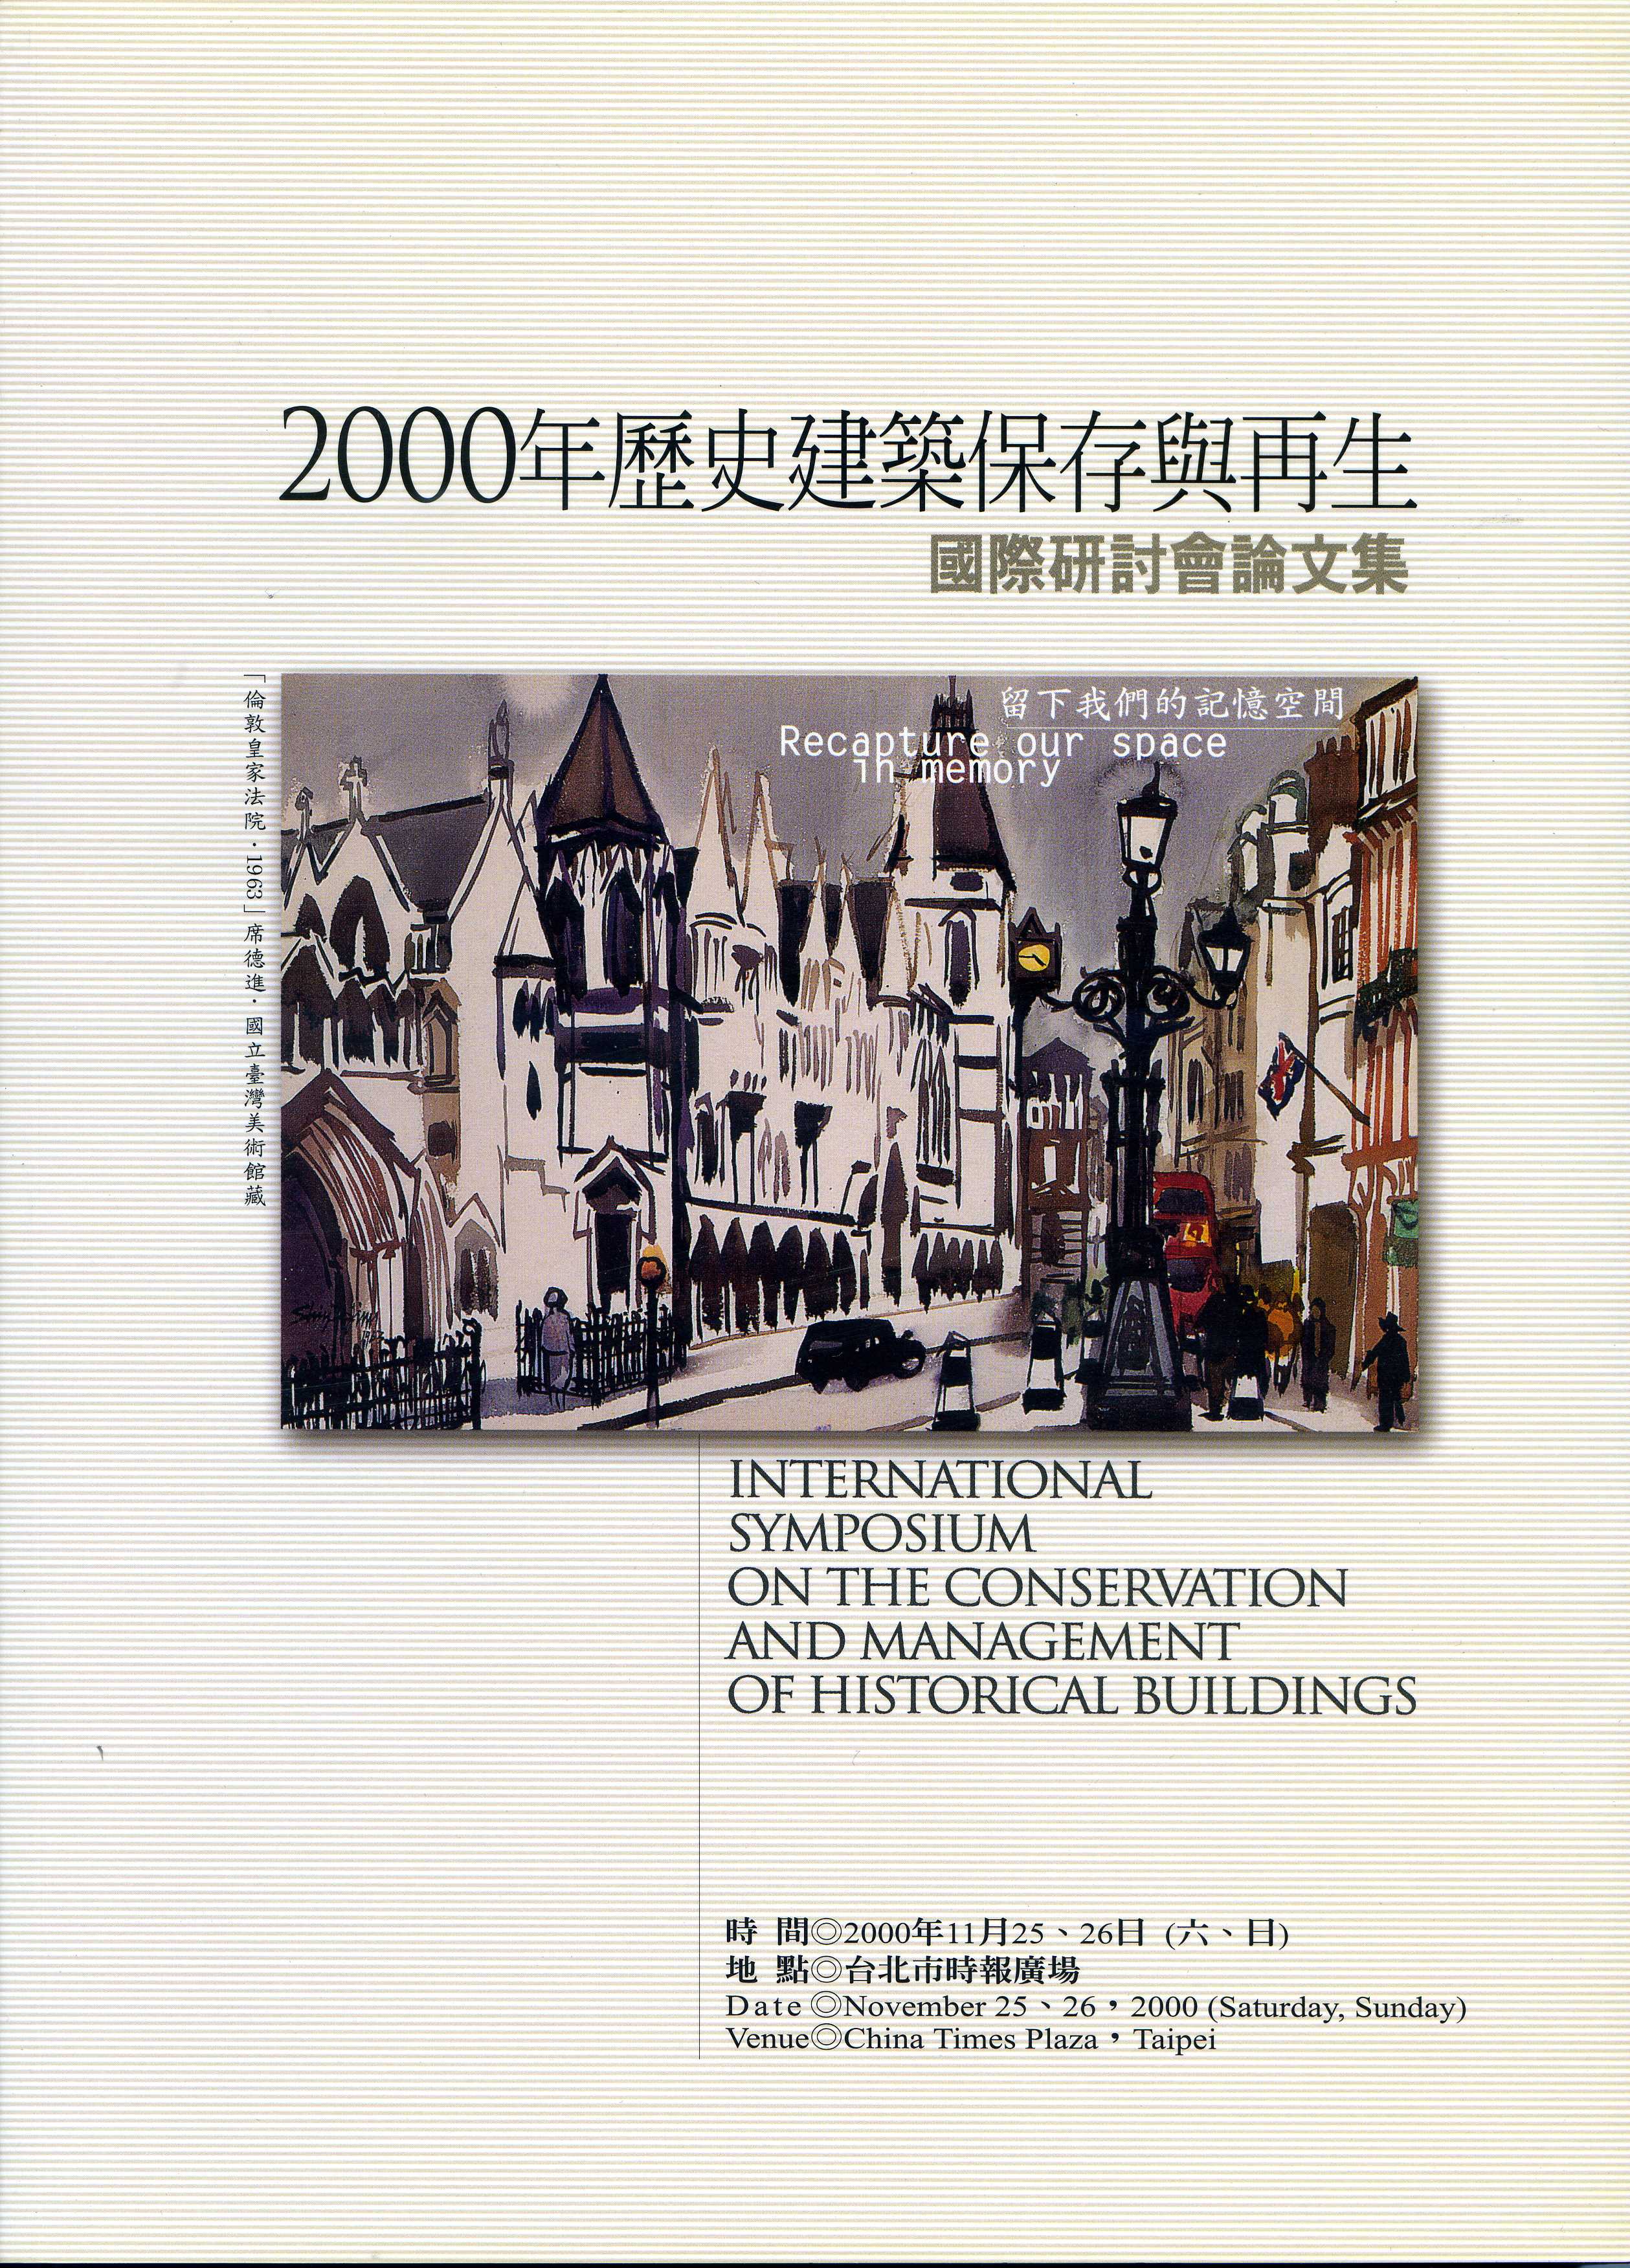 2000年歷史建築保存與再生國際研討會論文集